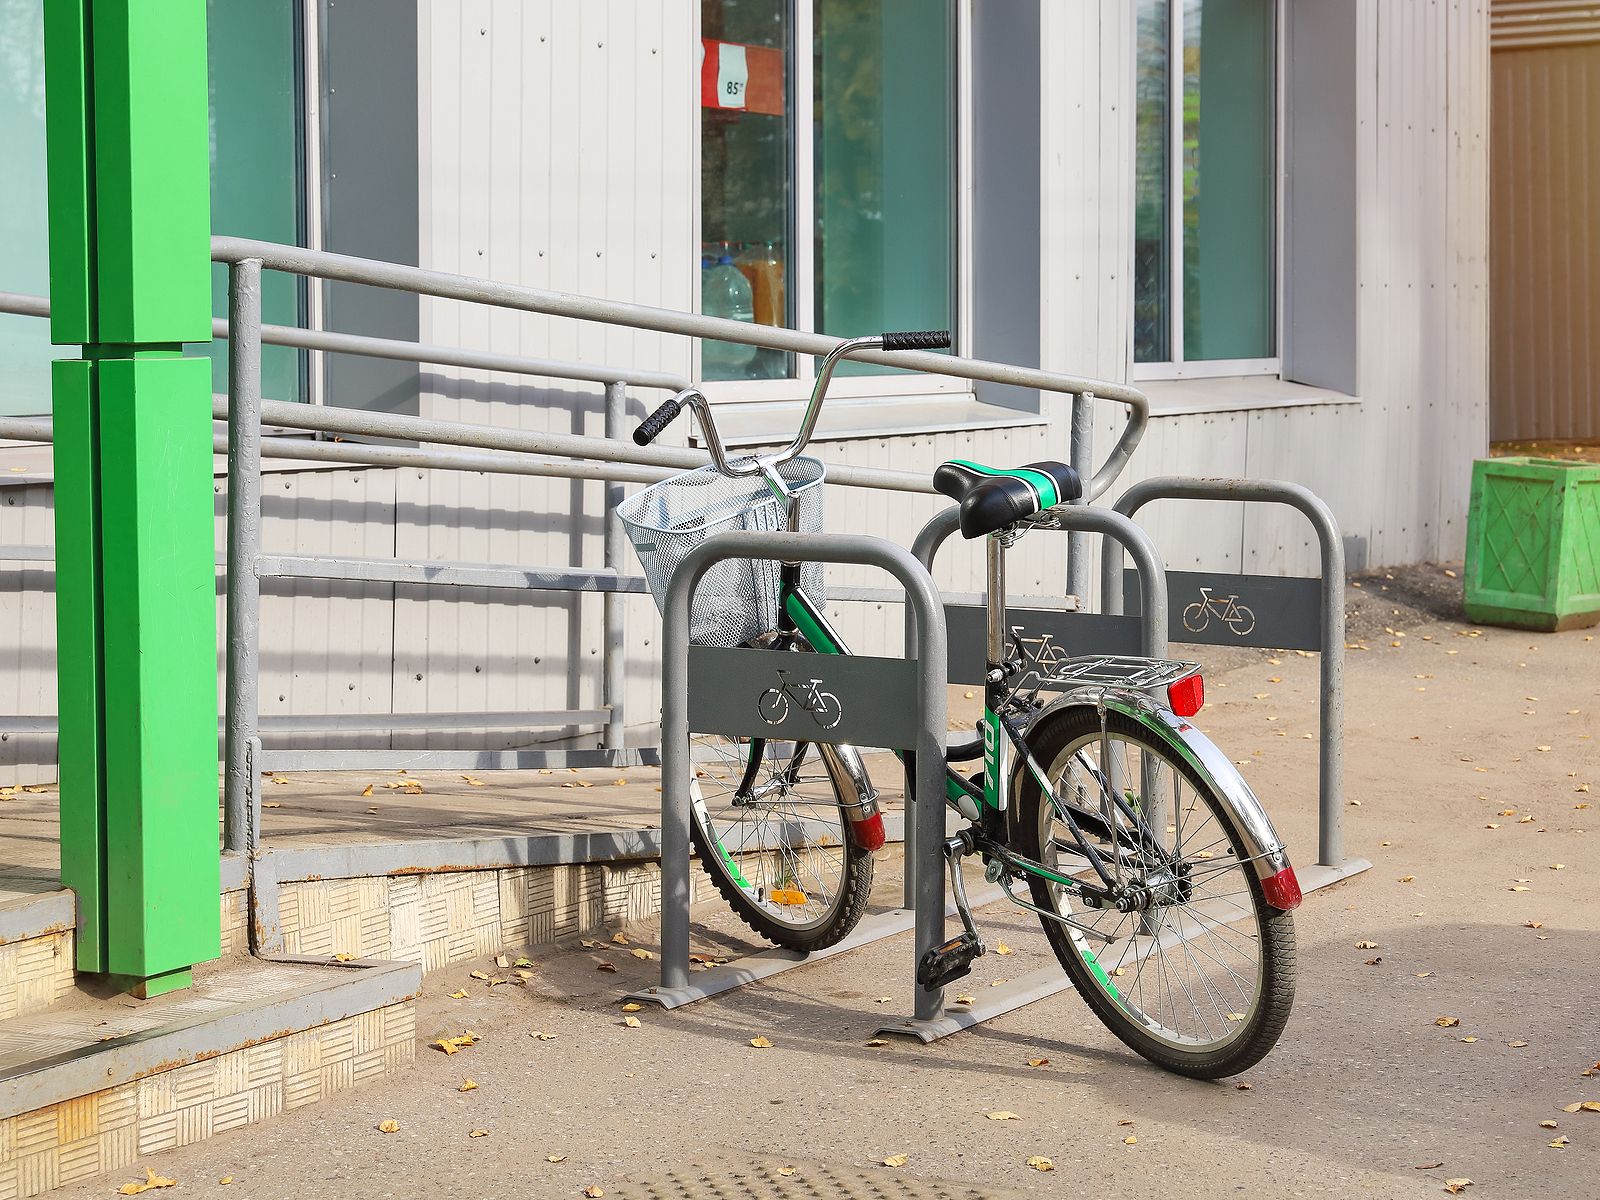 Cómo hacer un aparcamiento para bicis con neumáticos